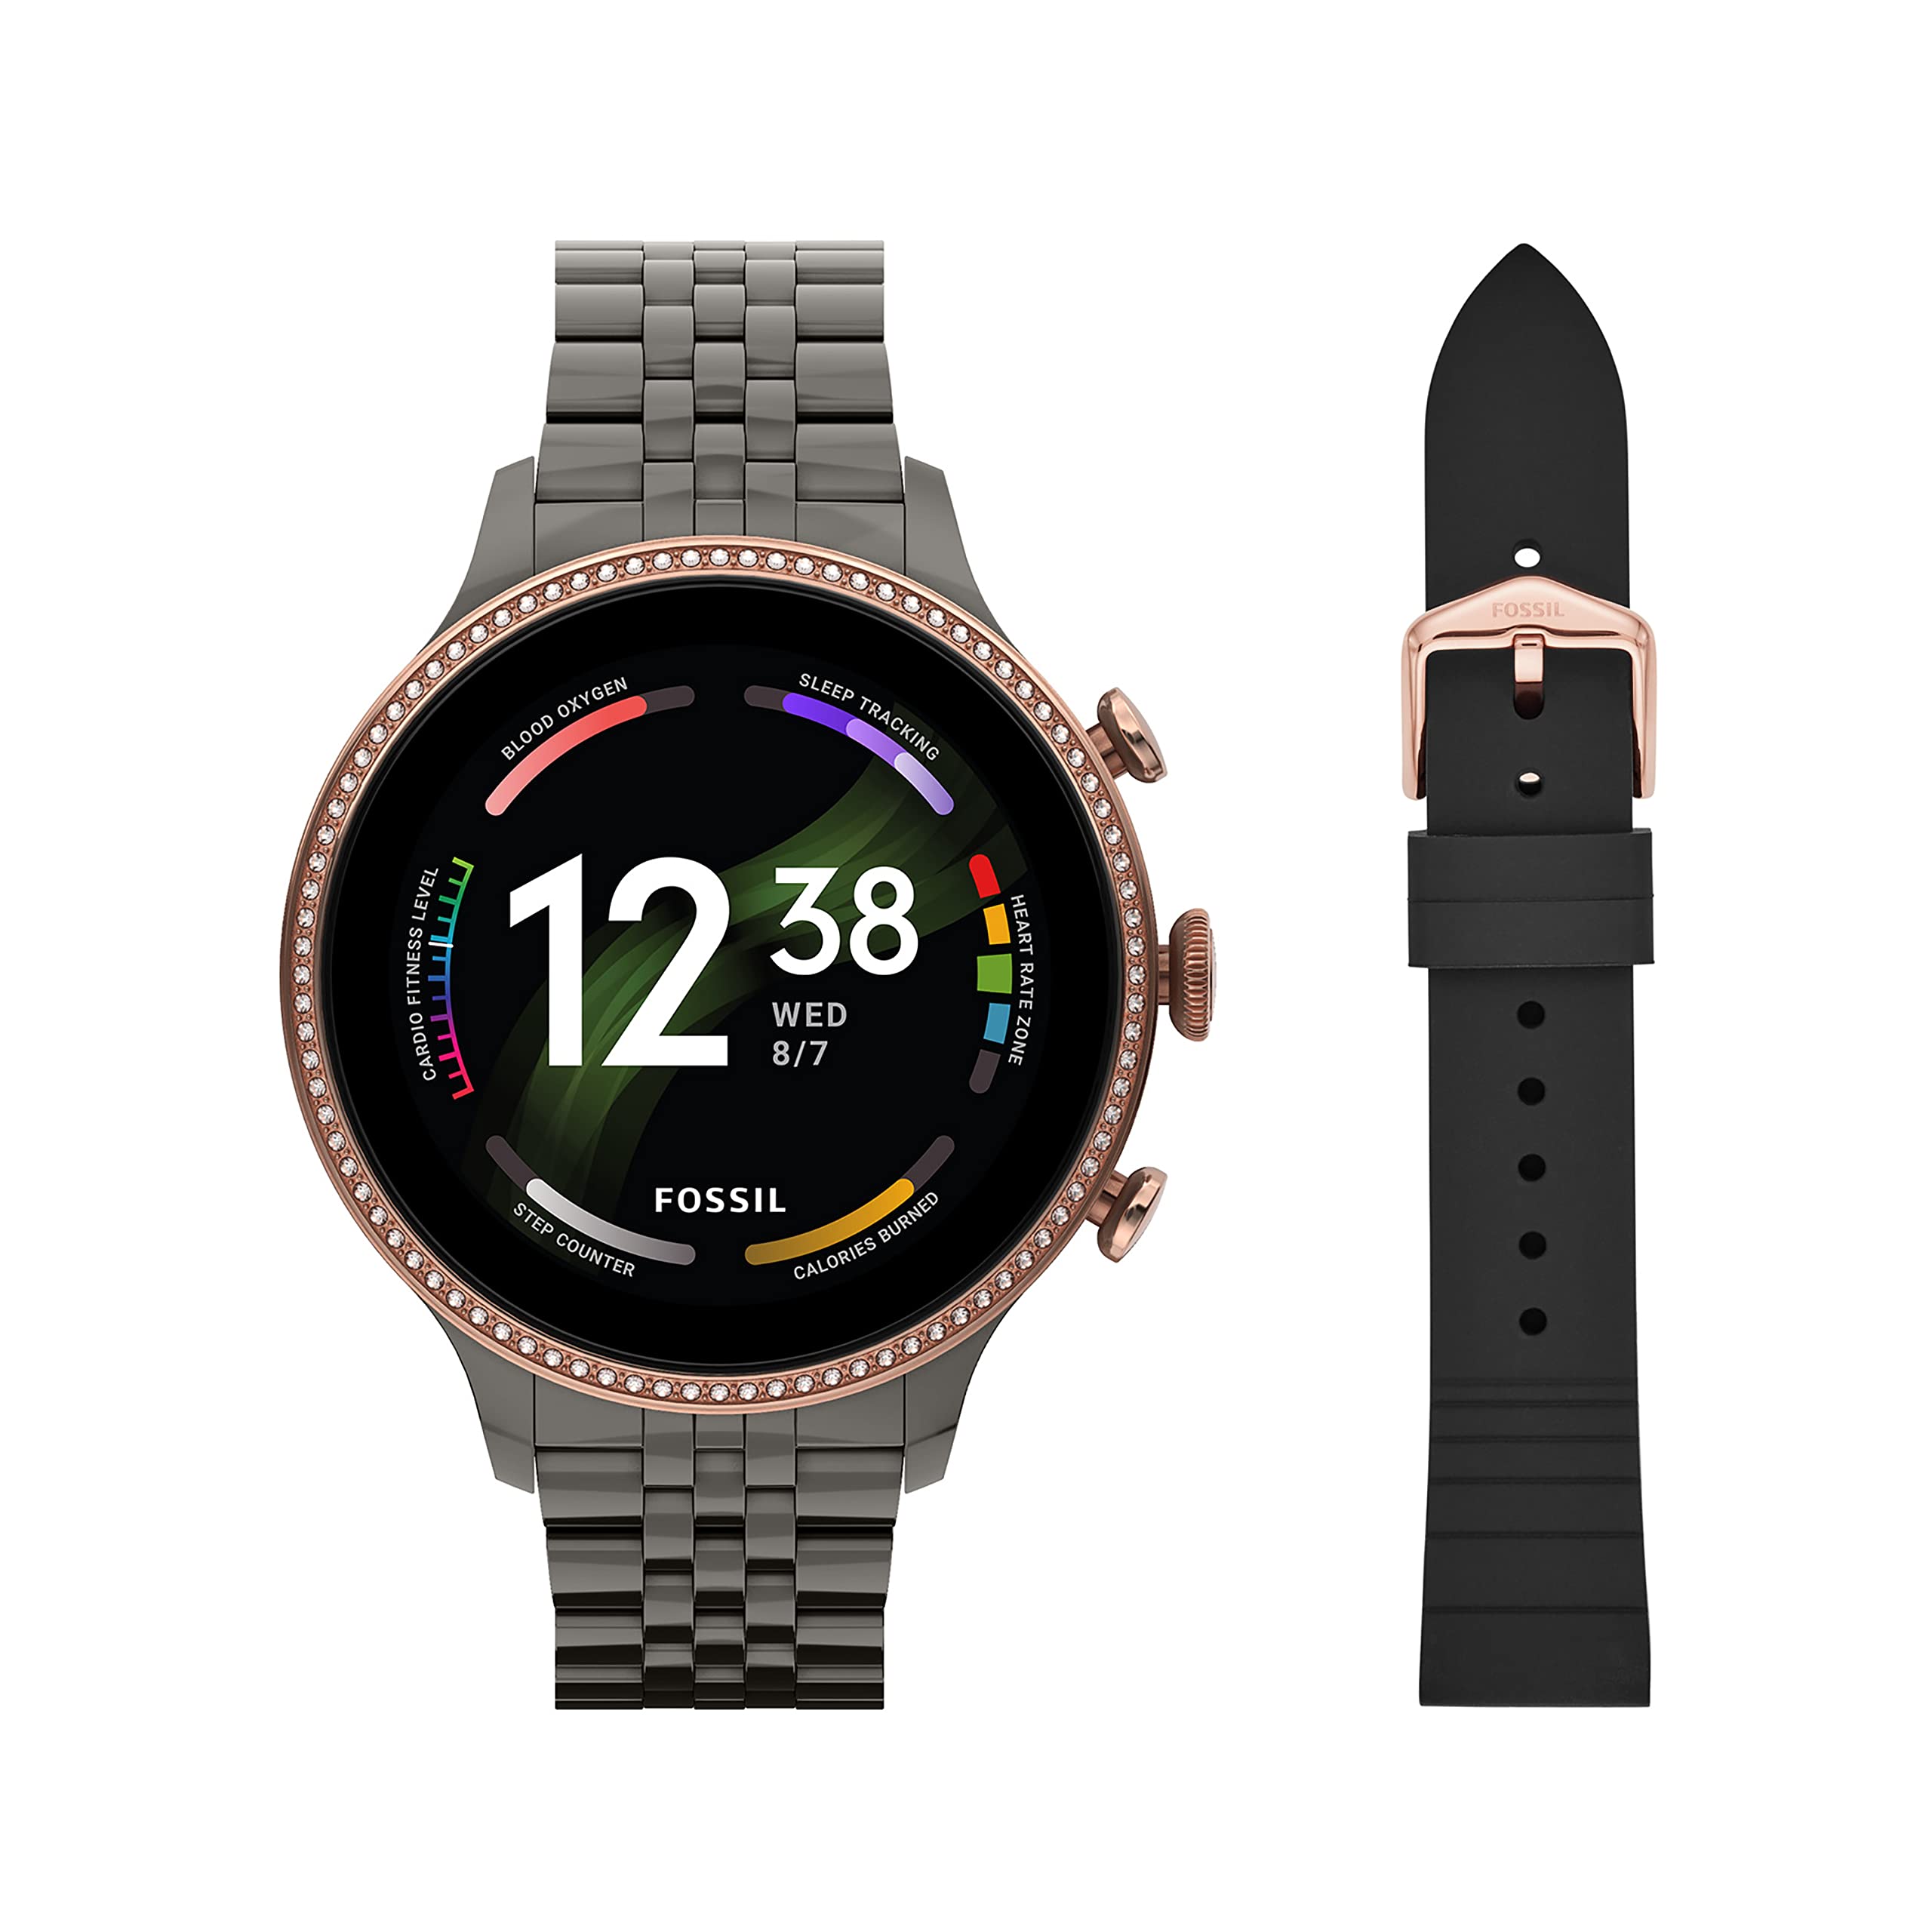 Fossil 第 6 代 42 毫米触摸屏智能手表，内置 Alexa、心率、血氧、活动跟踪、GPS、扬声器、智能手机通知